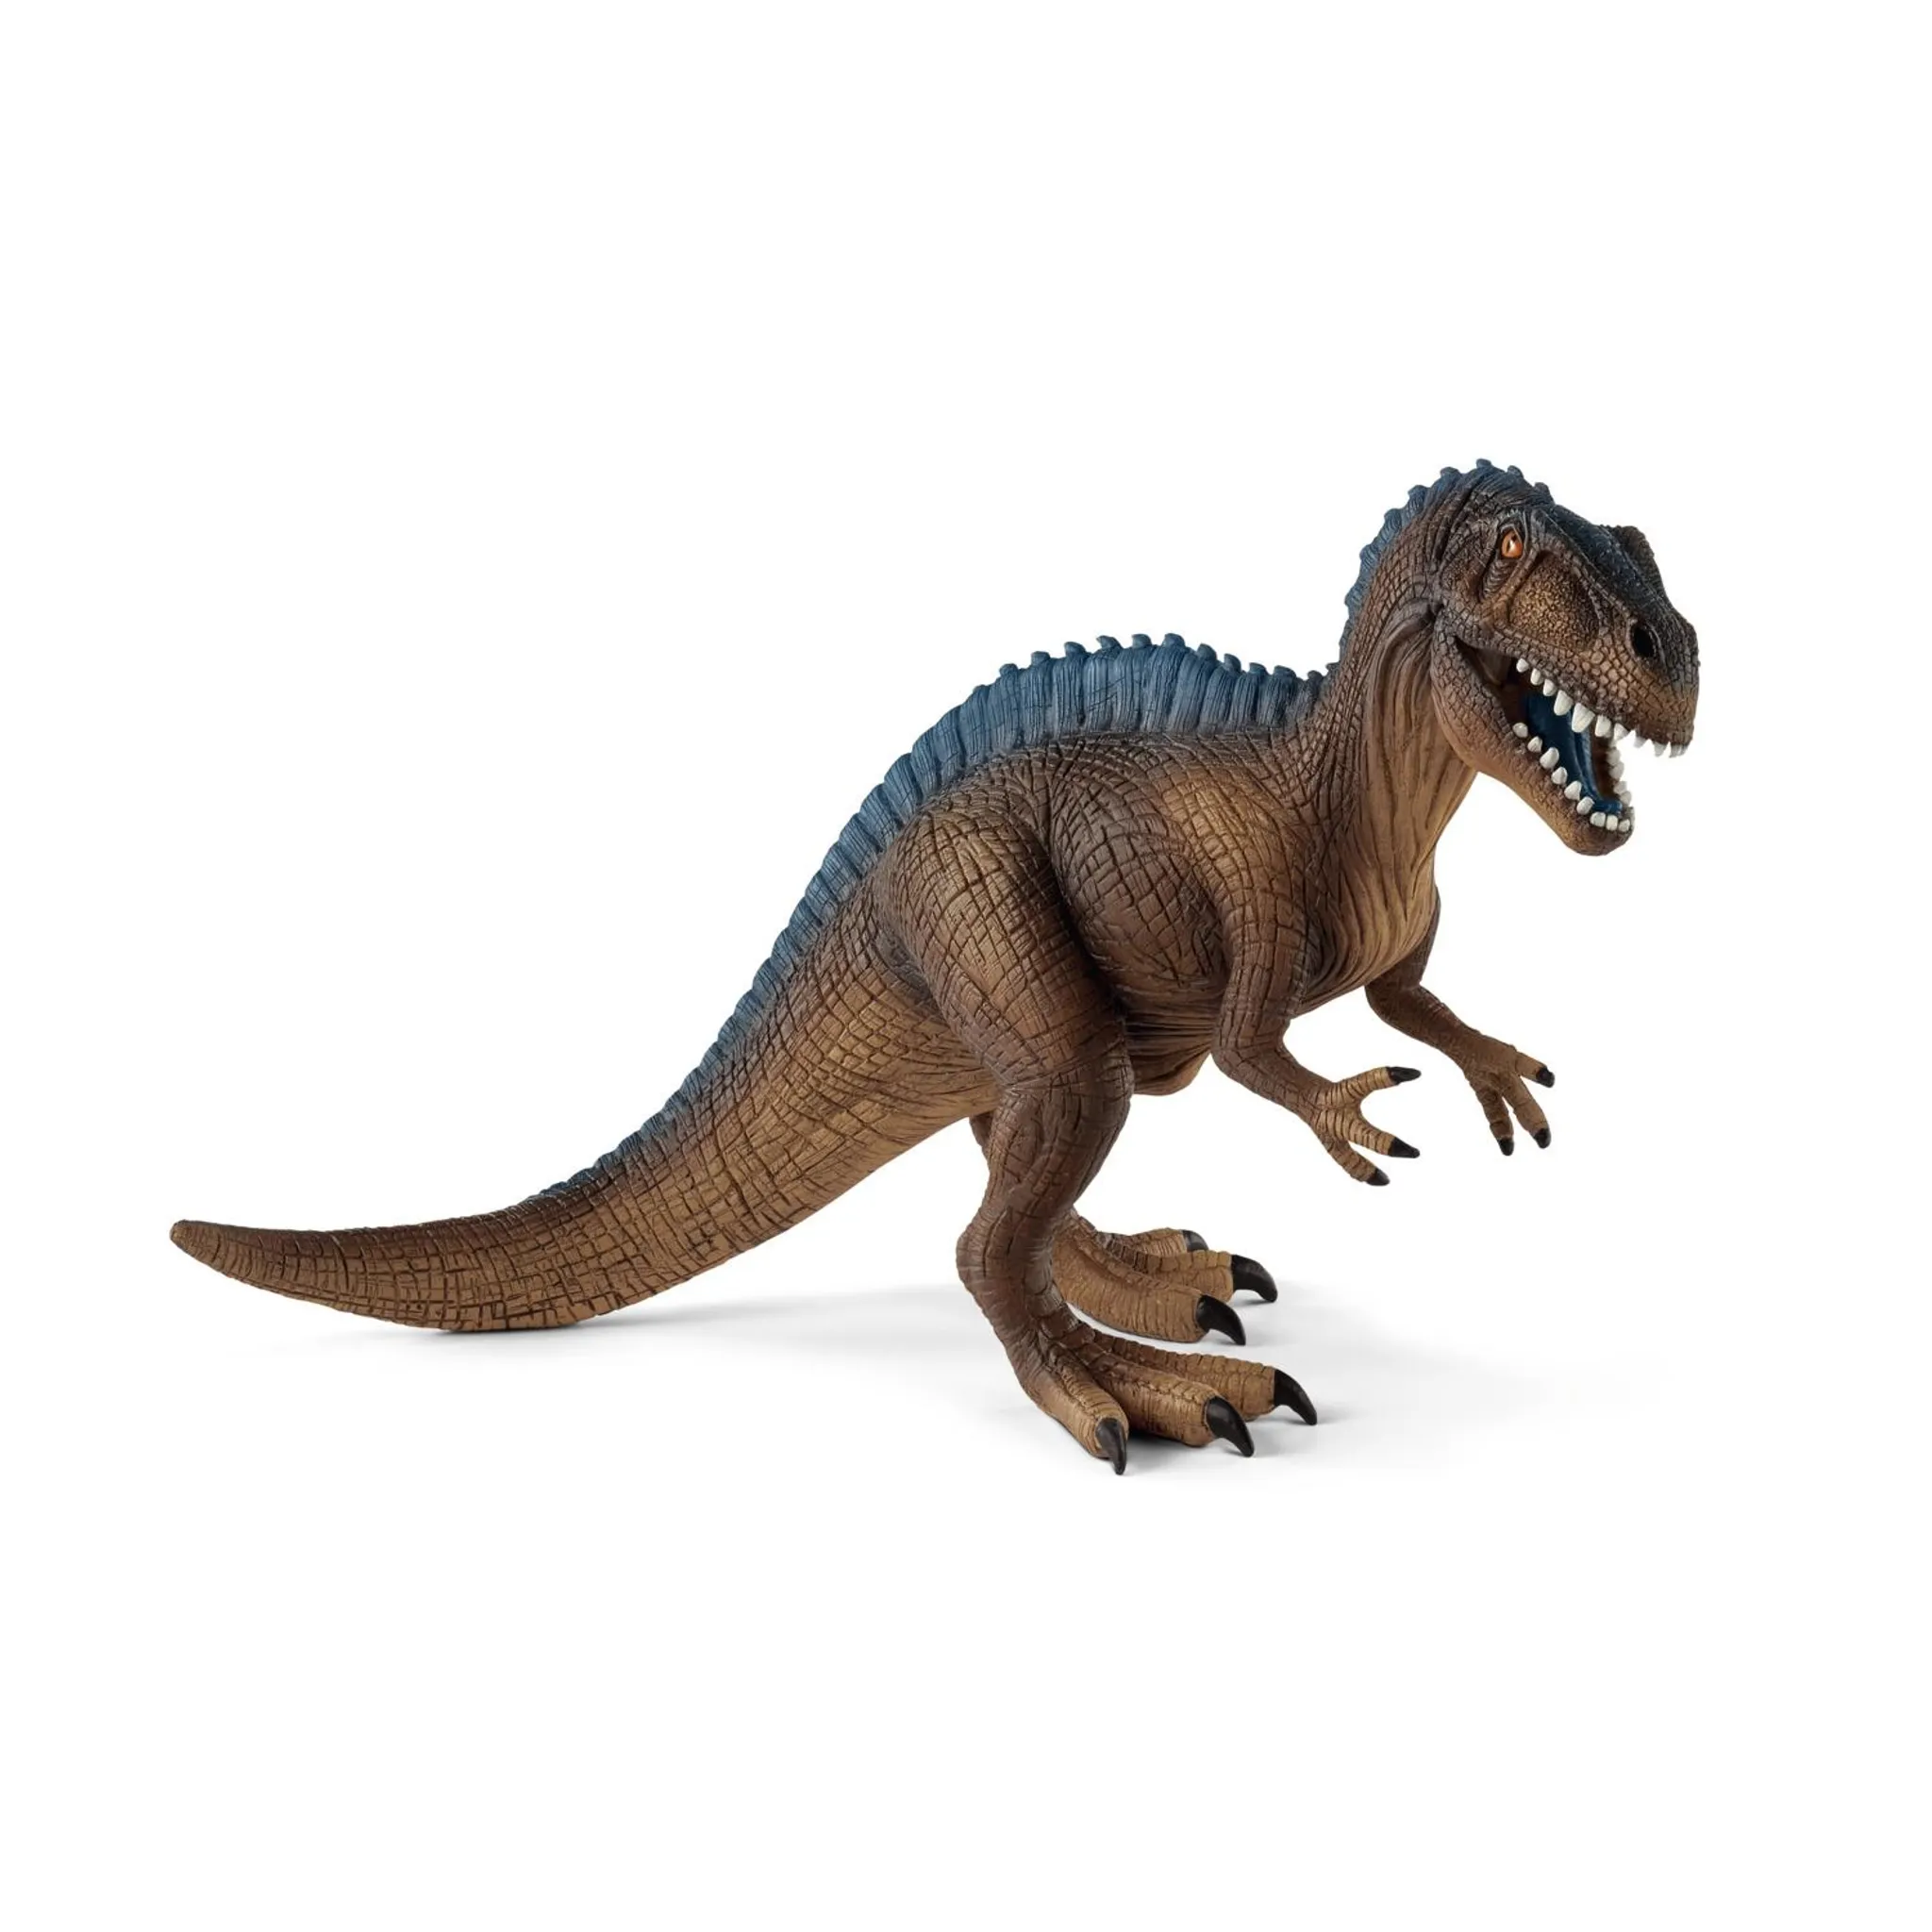 Schleich Dino Figur Herrerasaurus Dinosaurier Spielfigur ab 3 Jahre